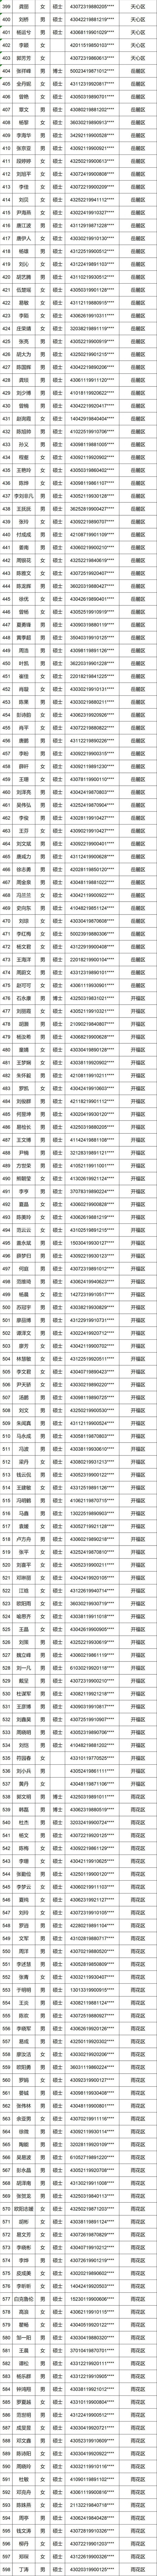 长沙购房补贴名单（2018年9月-2018年11月）